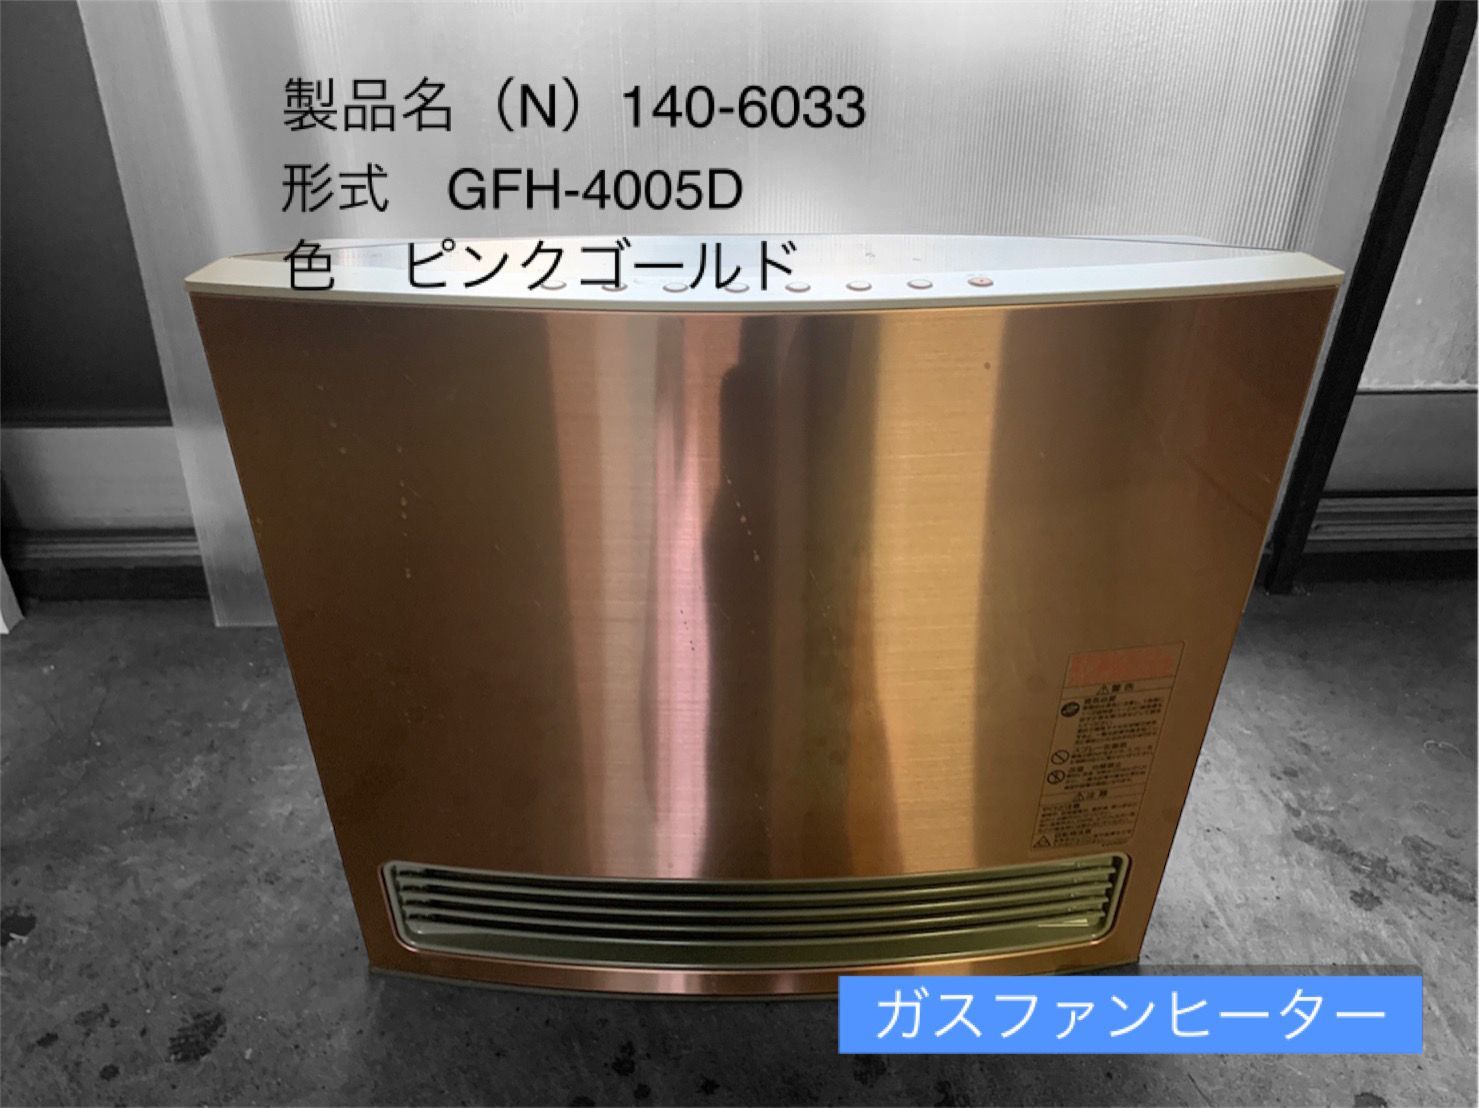 ファンヒーター大阪ガス ガスファンヒーター Vivace(ビバーチェ) 140-6033型